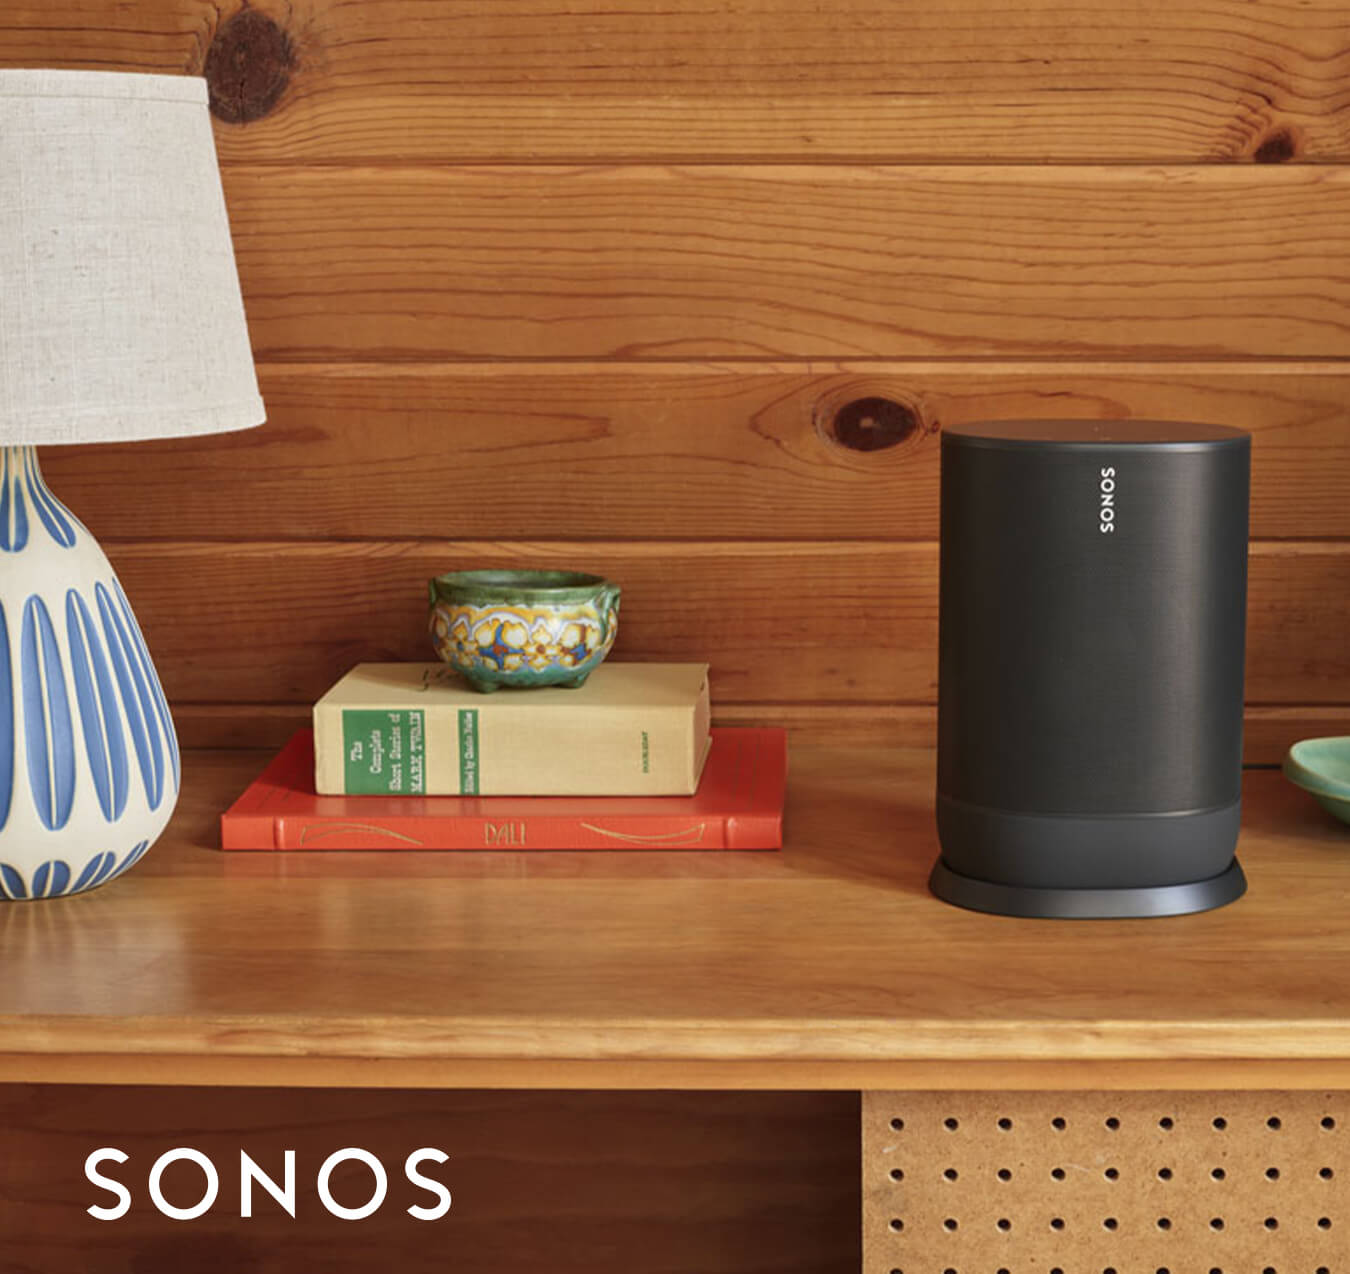 Sonos smart speaker on top of a dresser